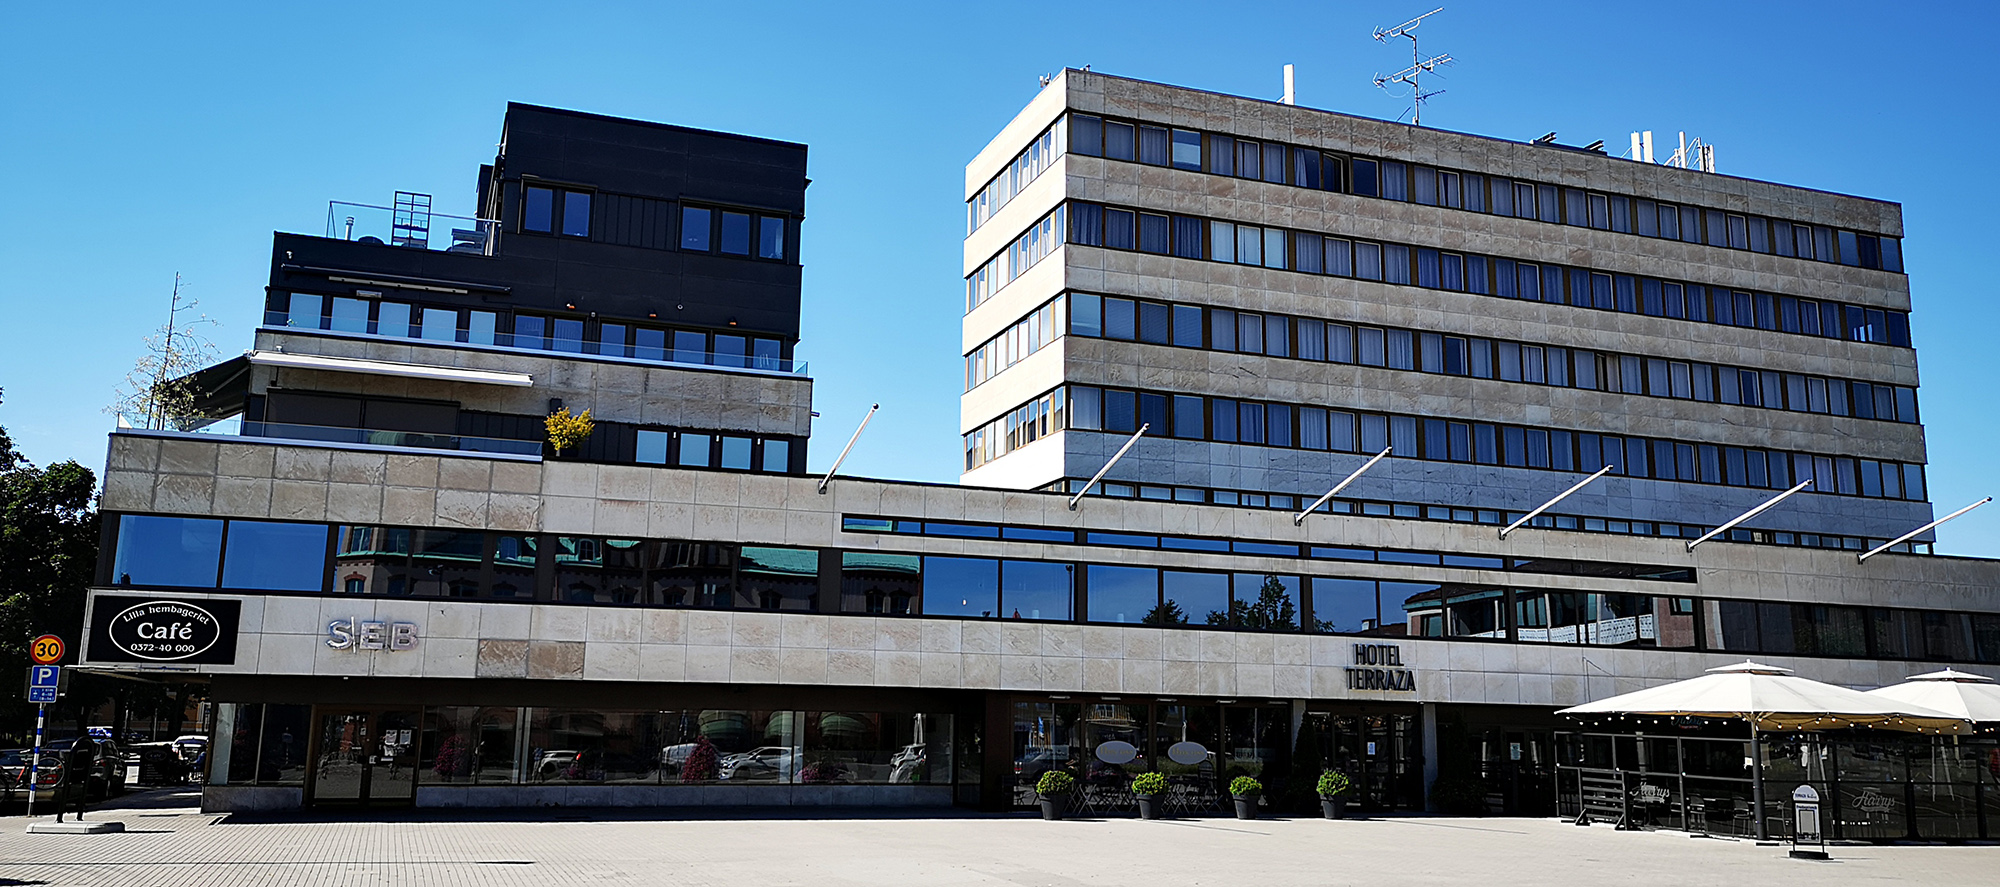 Är Hotel Terazza i Ljungby Sveriges fulaste byggnad genom tiderna?